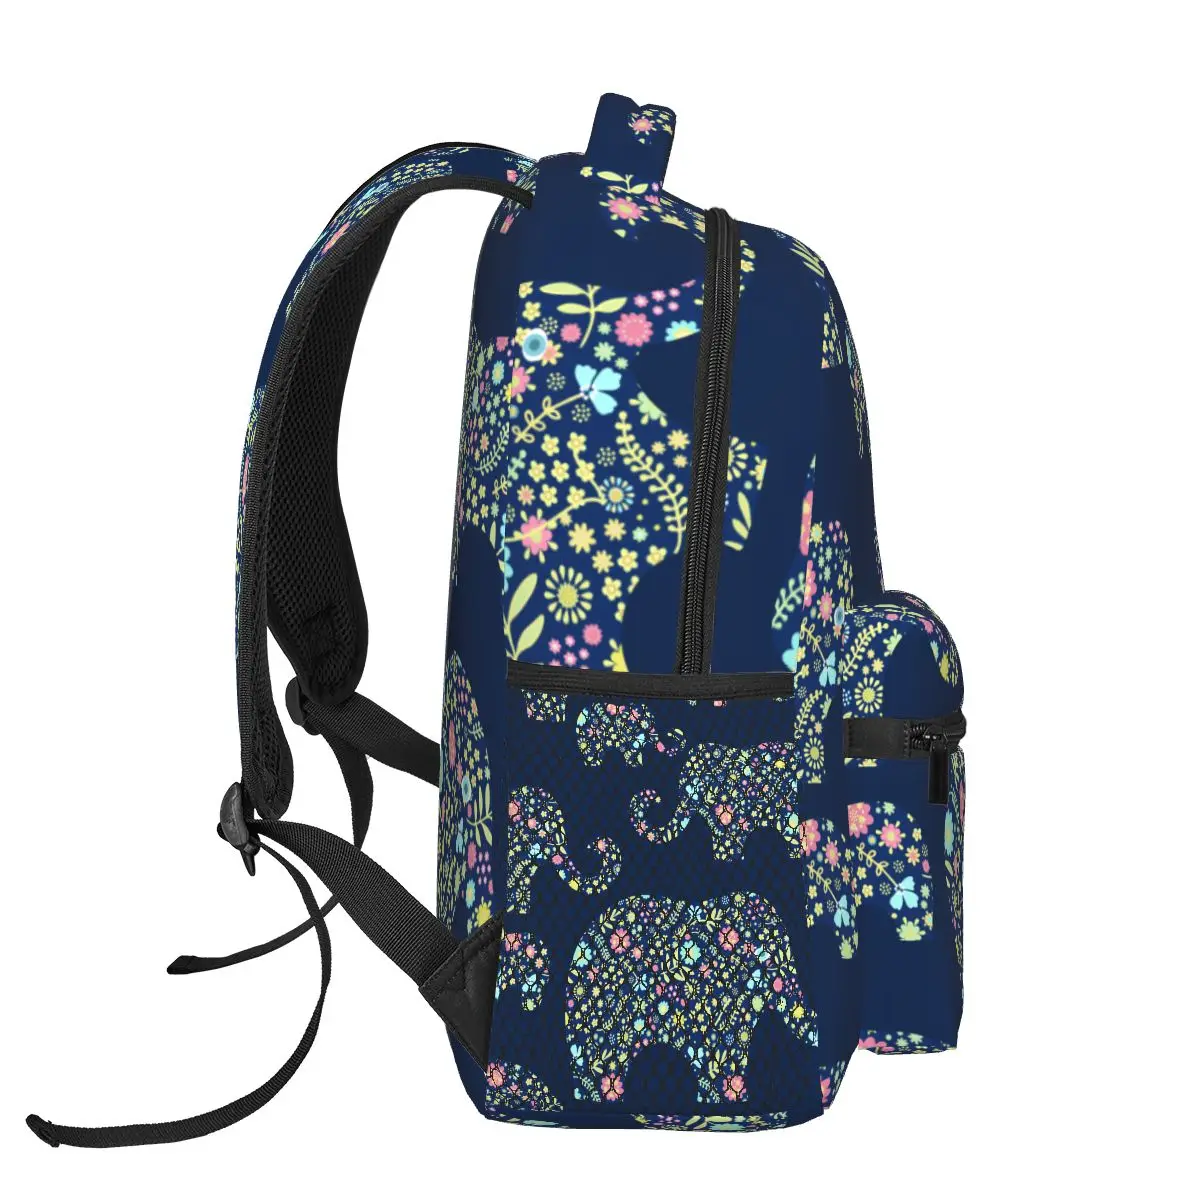 Повседневный новый простой женский рюкзак для подростковых путешествий, сумка через плечо с цветочными слонами на синем фоне - 2